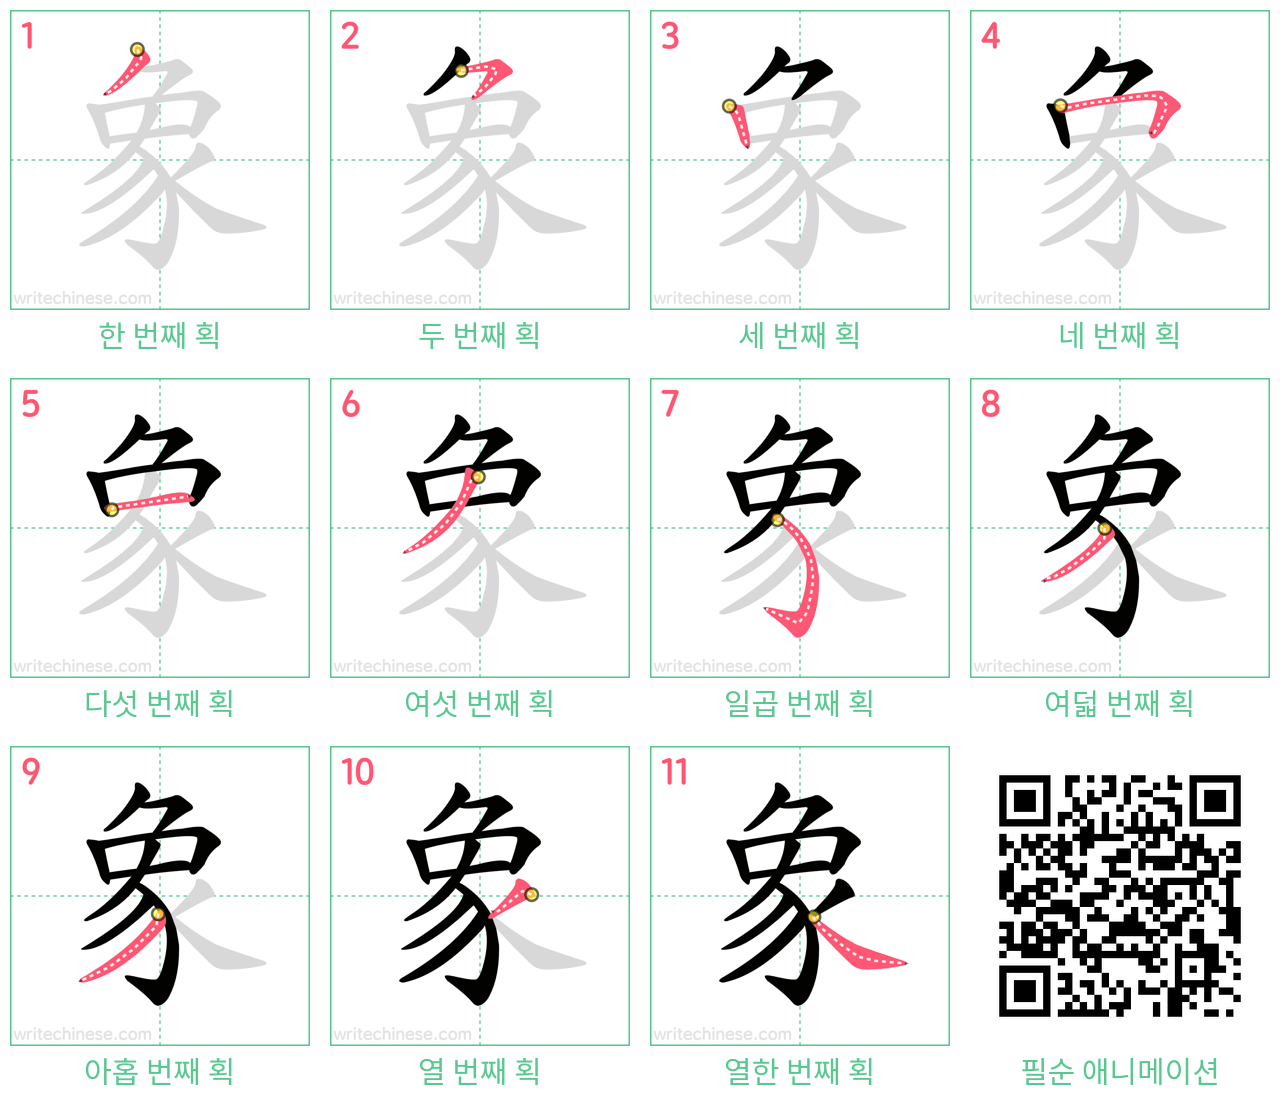 象 step-by-step stroke order diagrams